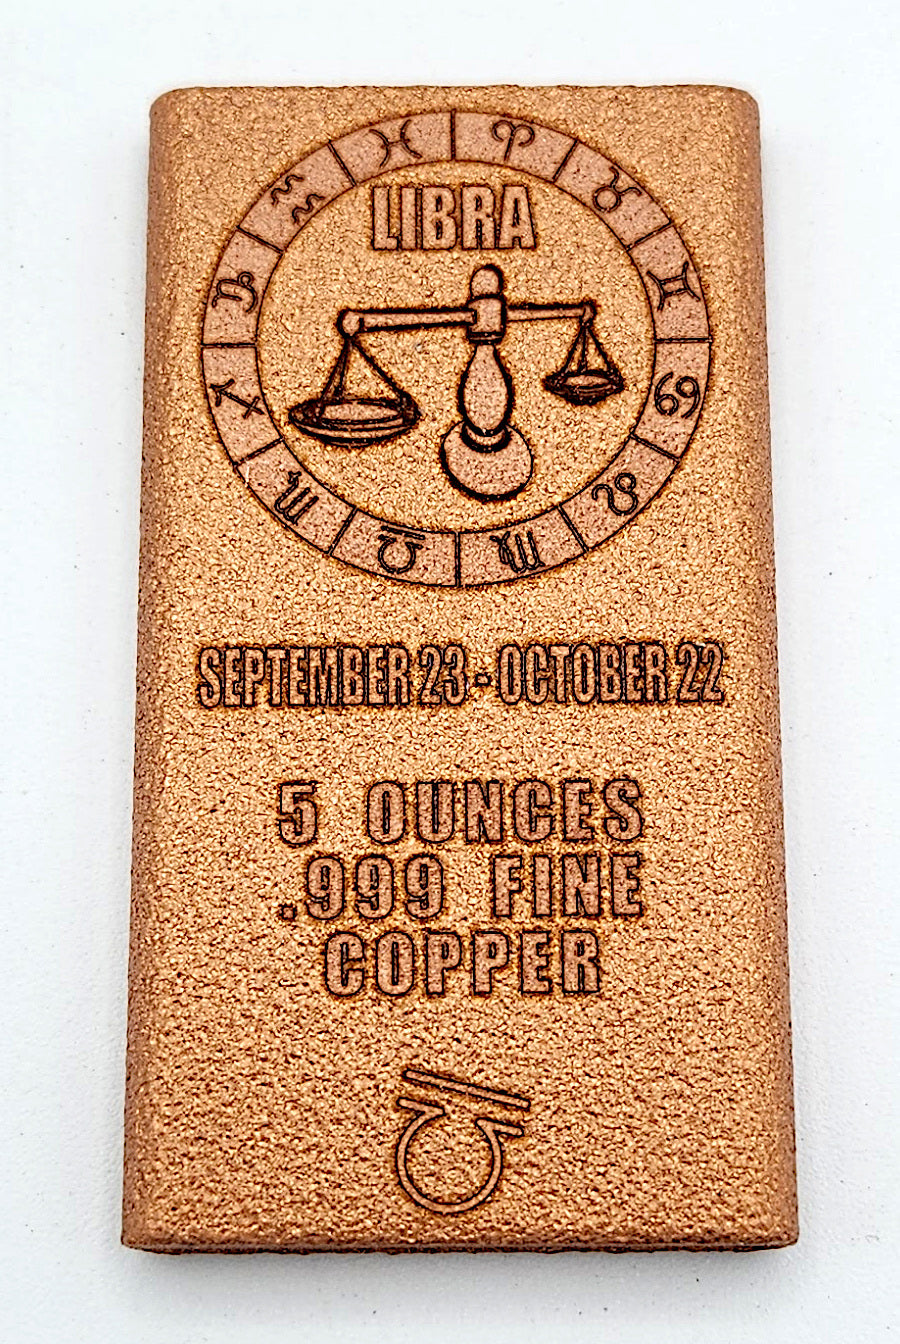 Libra - 5 oz Copper Bar .999 Fine Copper Bullion by Liberty Copper